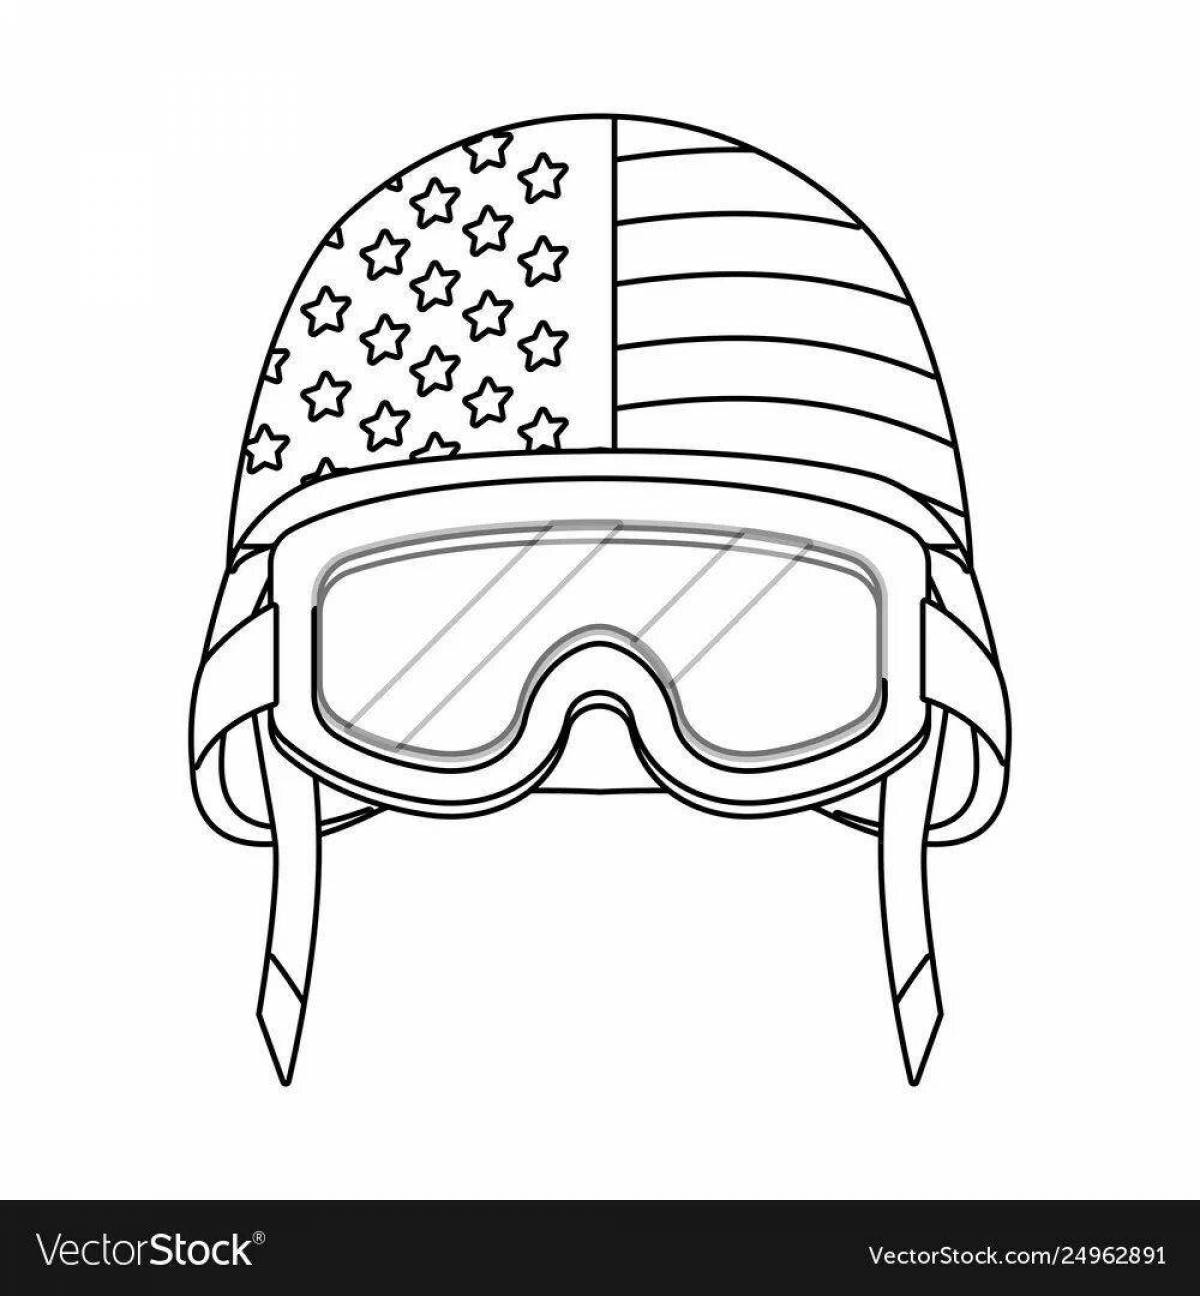 Soldier helmet #6